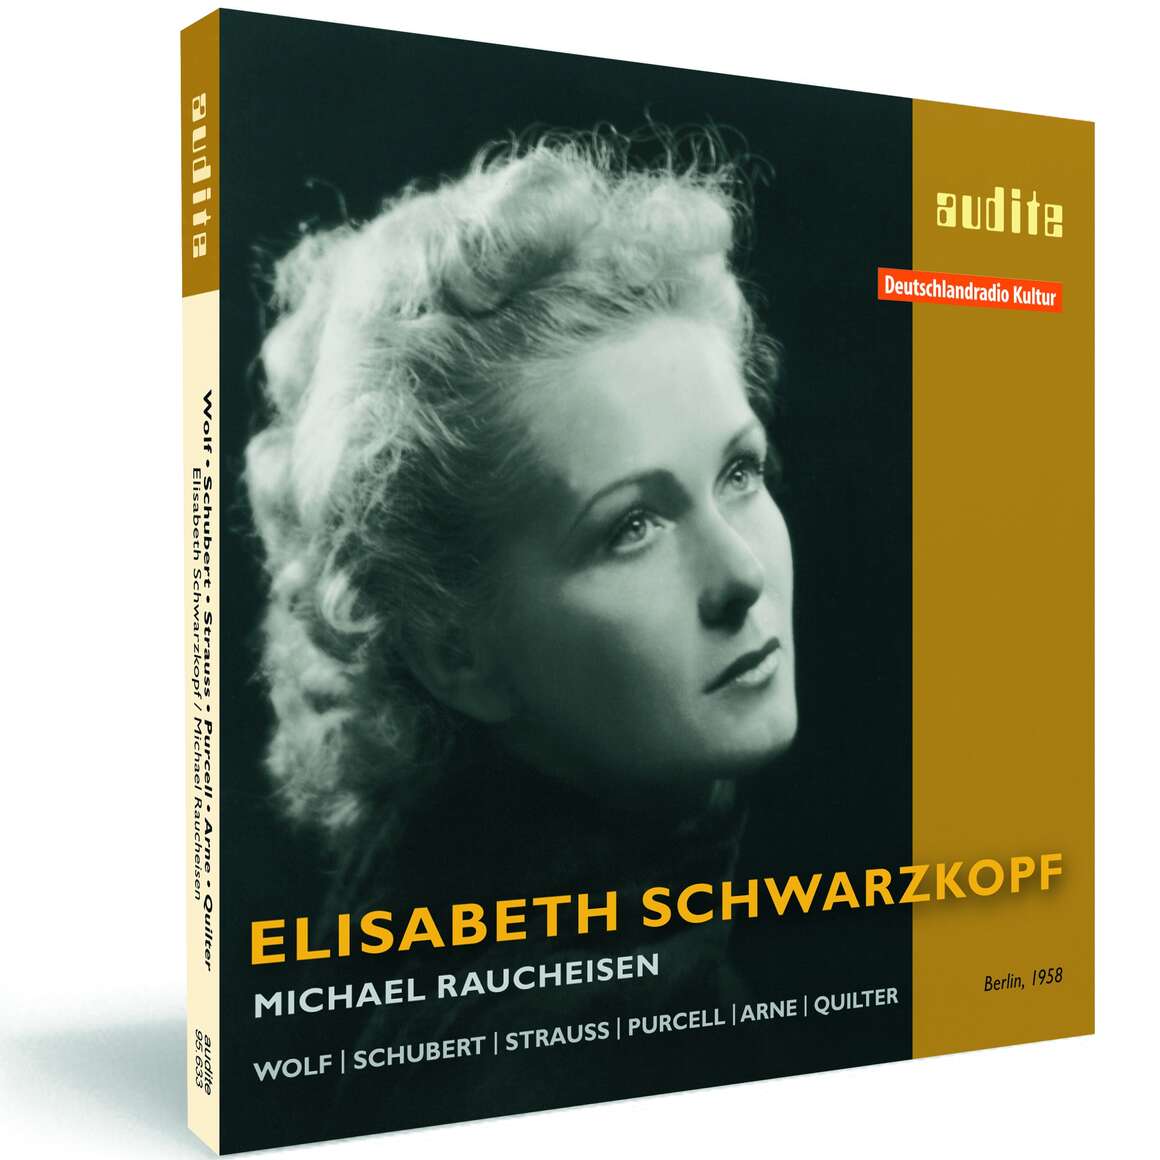 Elisabeth Schwarzkopf interprets songs by Wolf, Schubert, Strauss, Purcell, ...